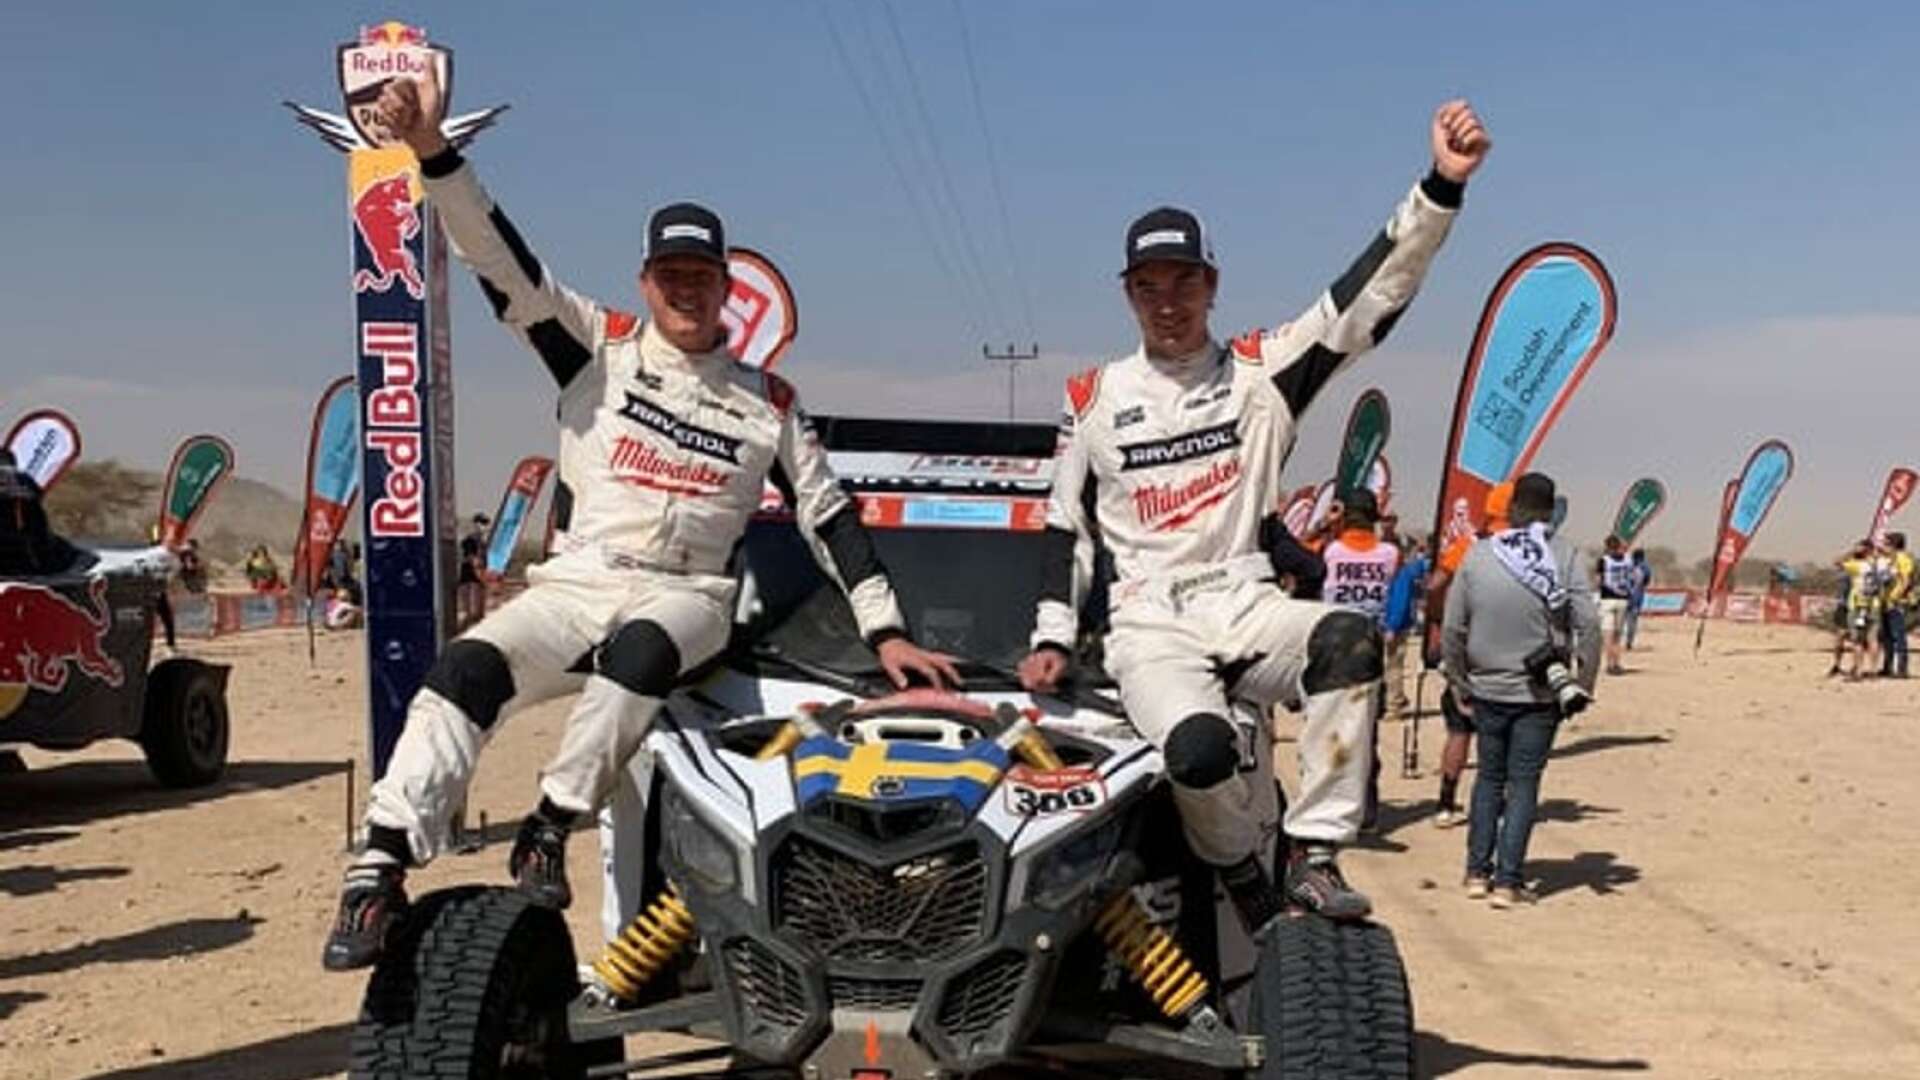 Wouter Rosegaar, kartläsare och Sebastian Eriksson glada efter målgång som totaltvåa i Dakarrallyt.